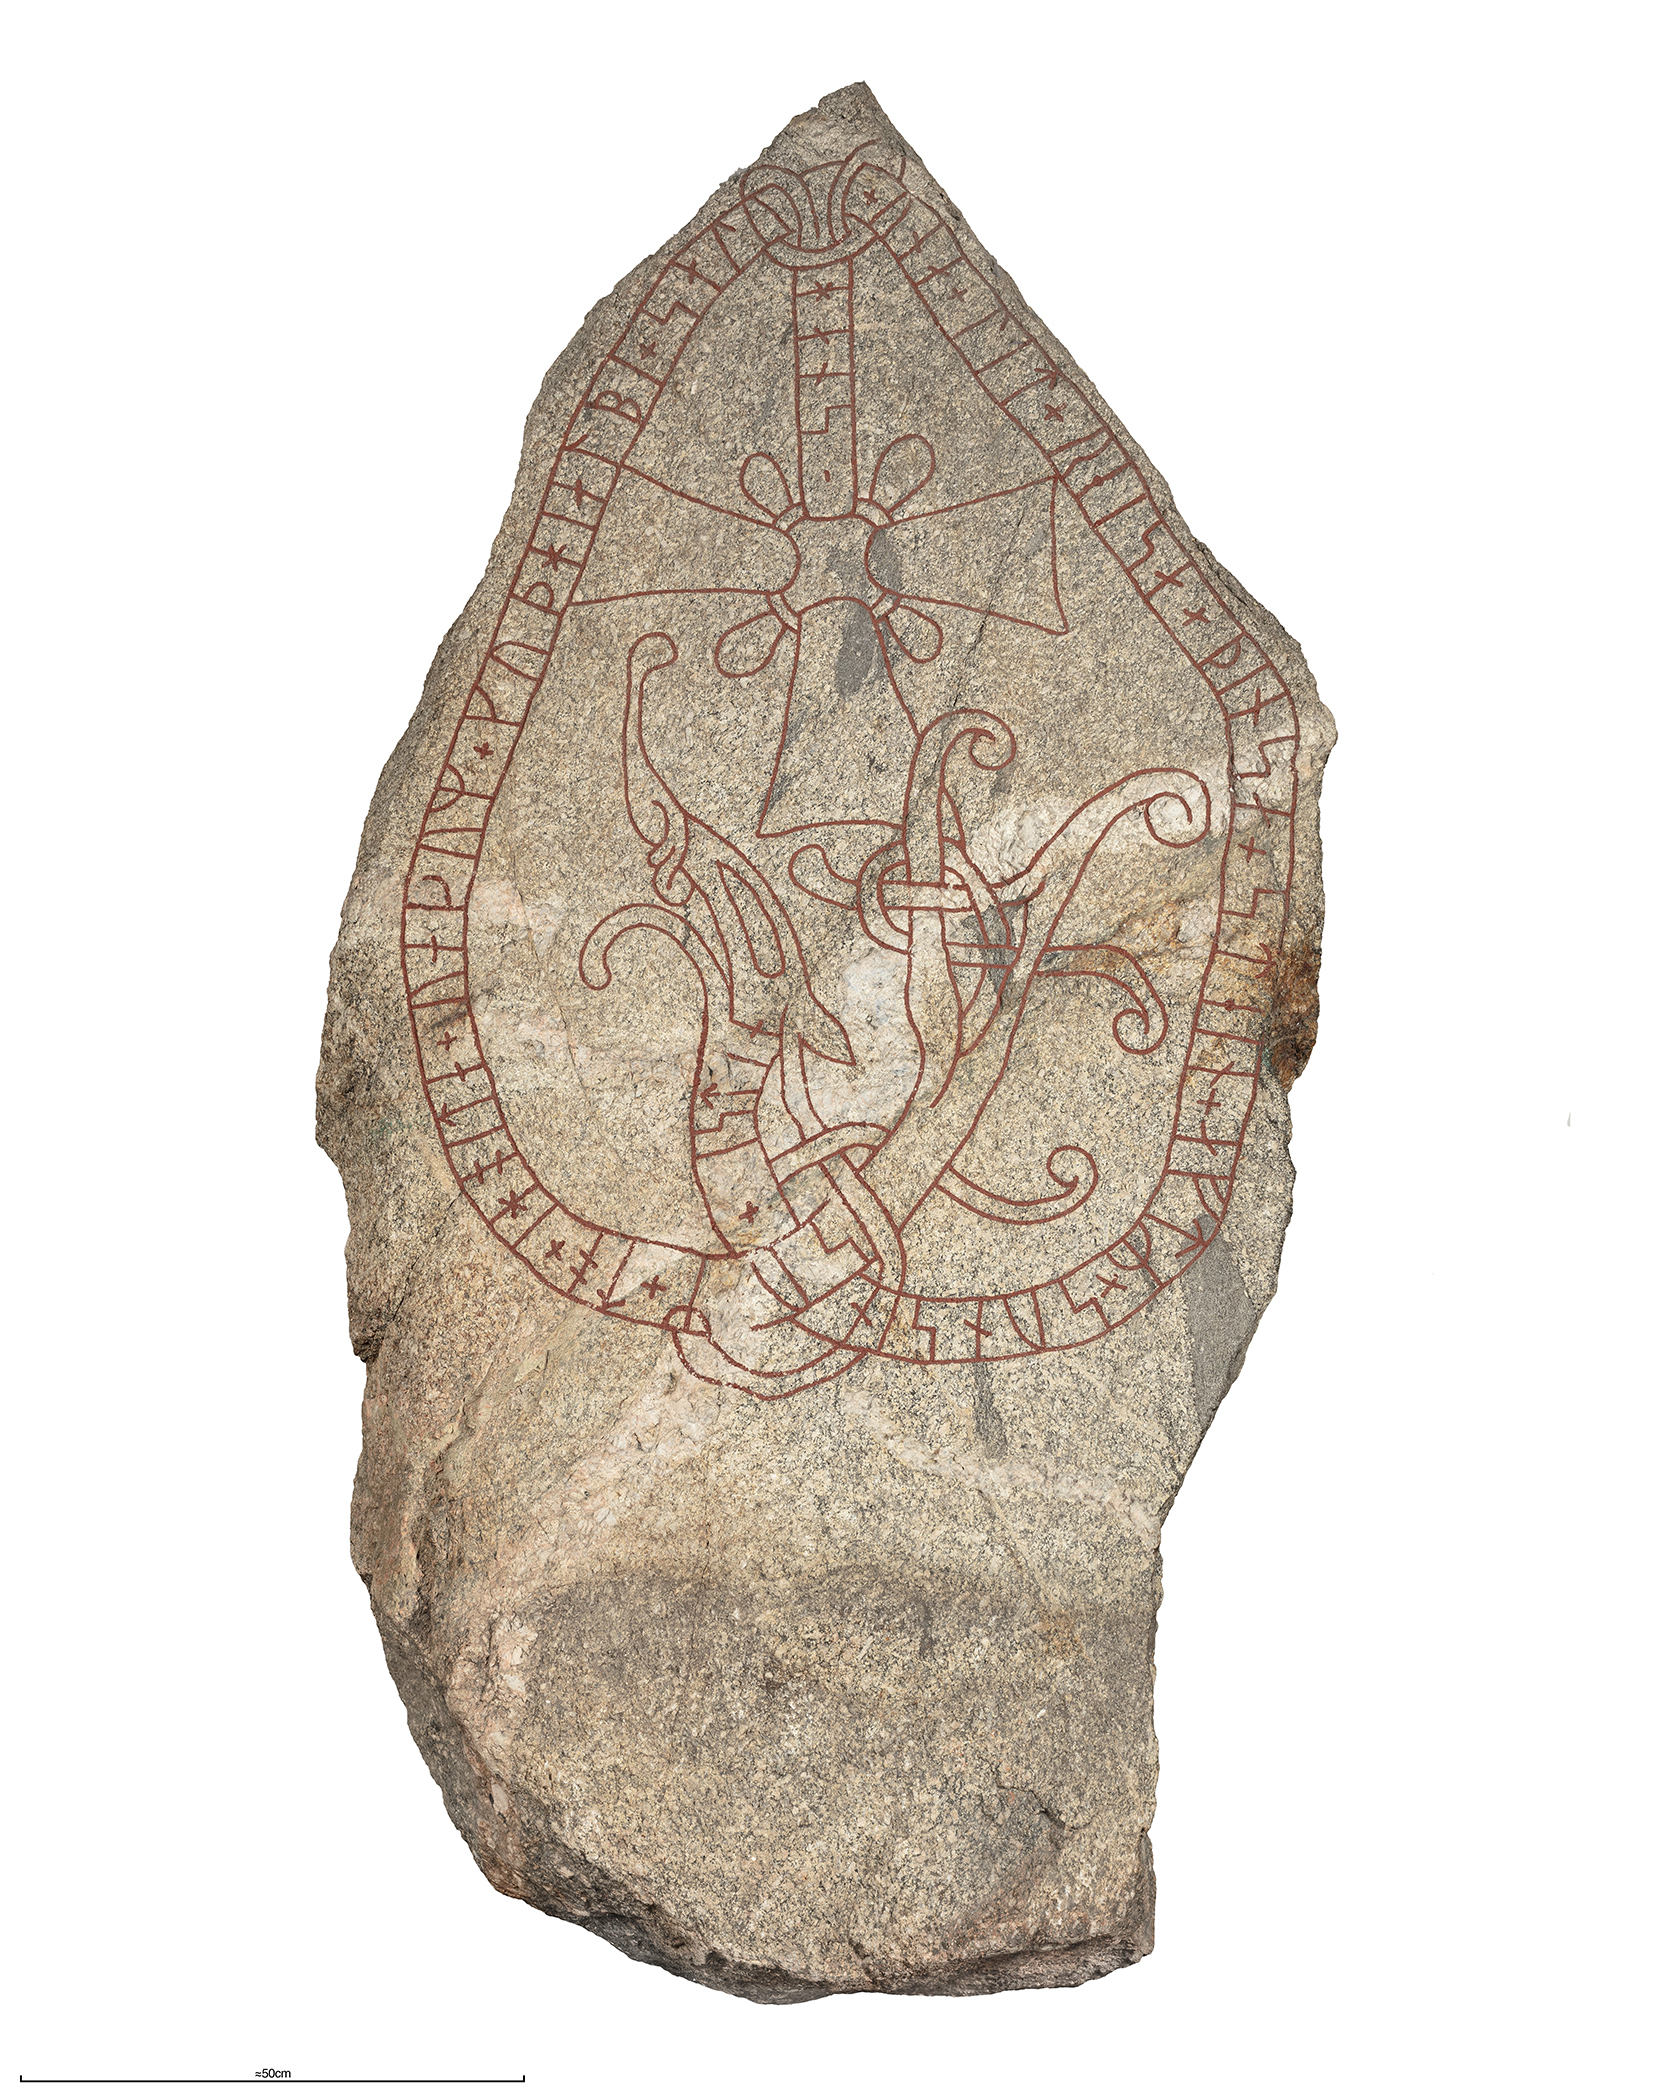 En spetsig runsten av granit med röd textslinga. I mitten syns ett kors och ett drakhuvud.